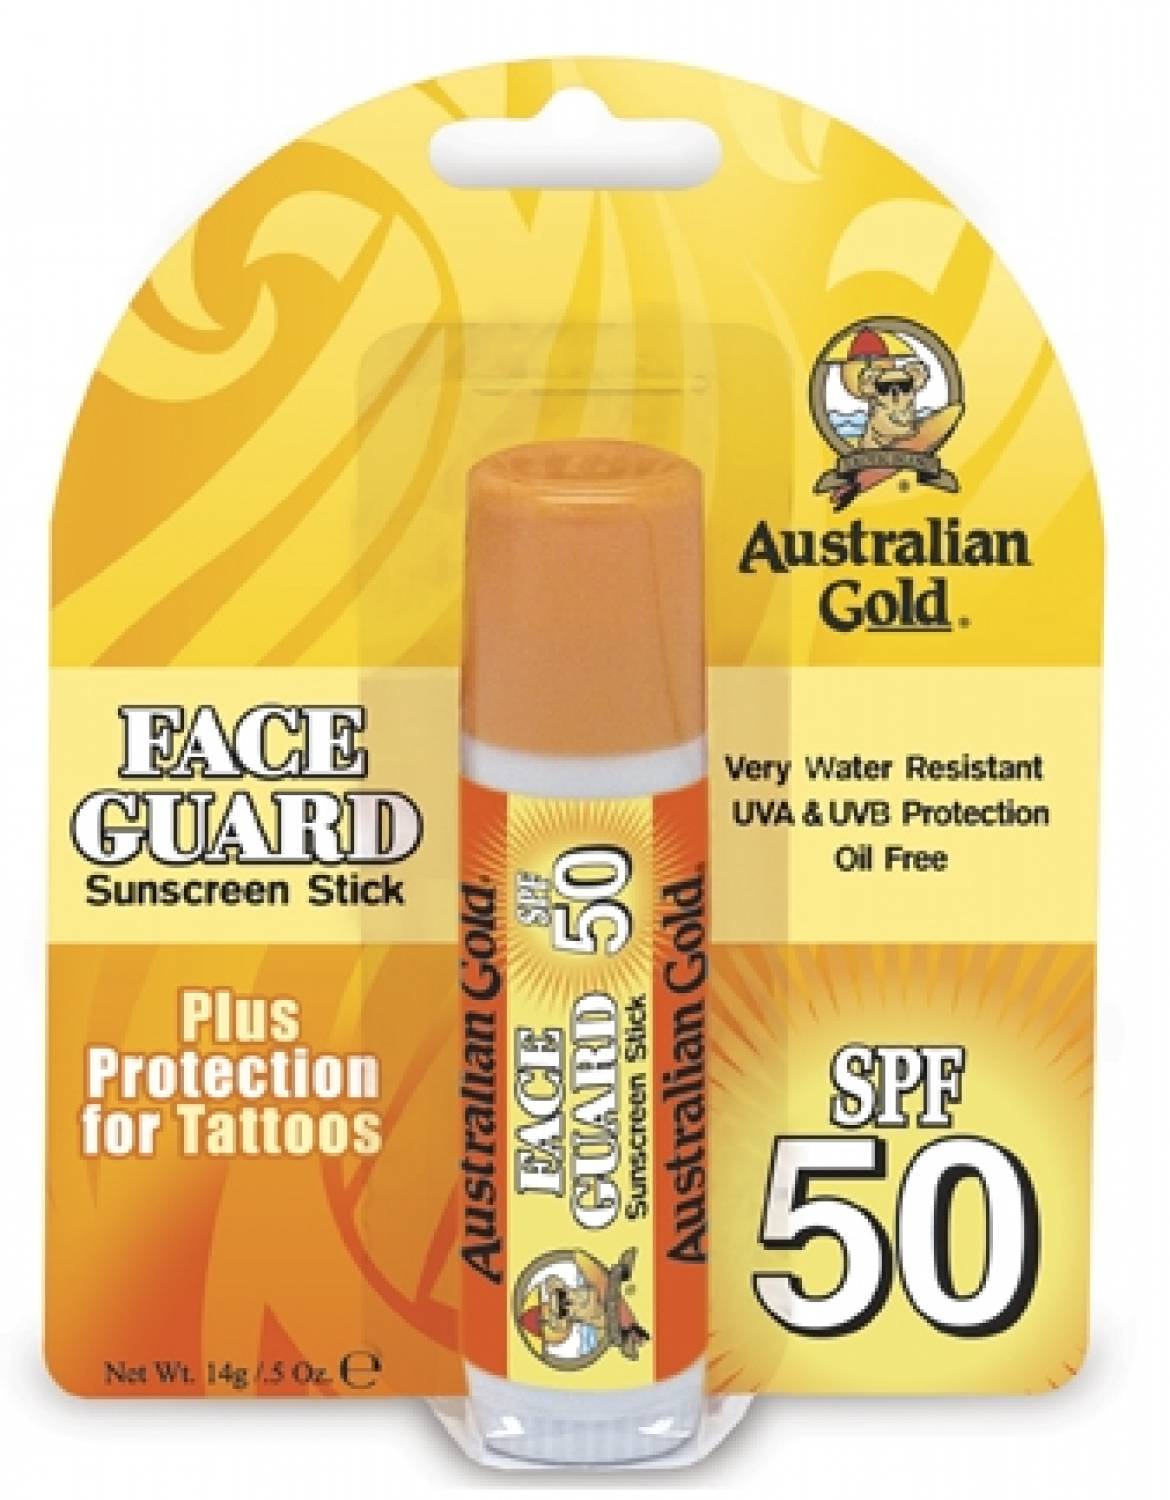 Australian Gold SPF 50 Protecção Facial Stick, grande estoque!